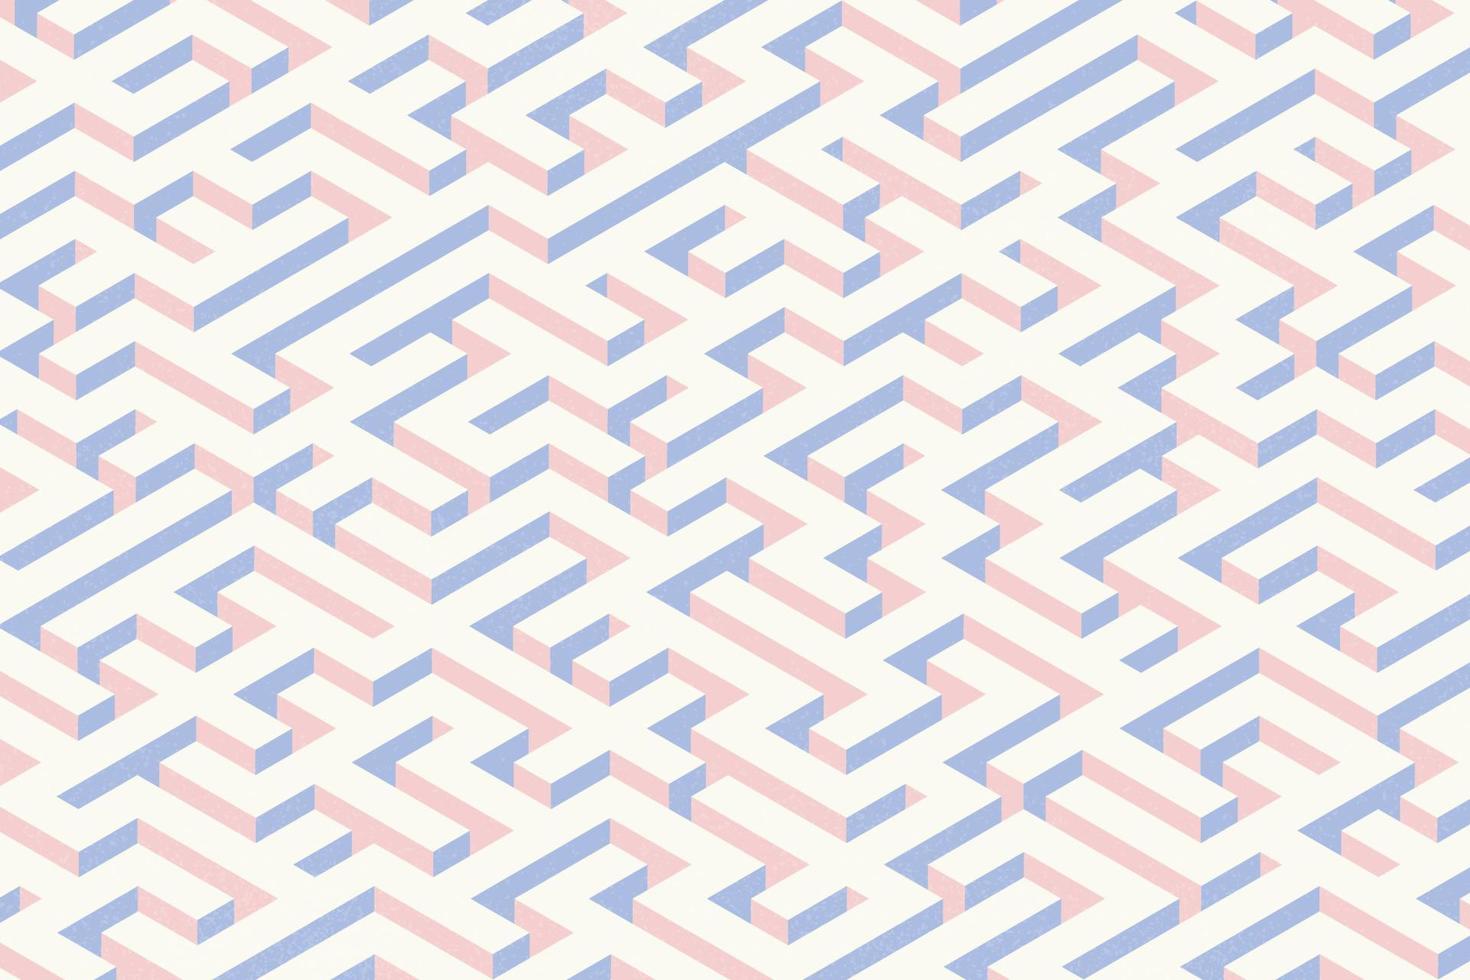 abstrakte pastellviolette und hellbeige komplexe labyrinthspielmusterillustration. isometrischer labyrinthhintergrund mit transparenter rauschbeschaffenheit vektor